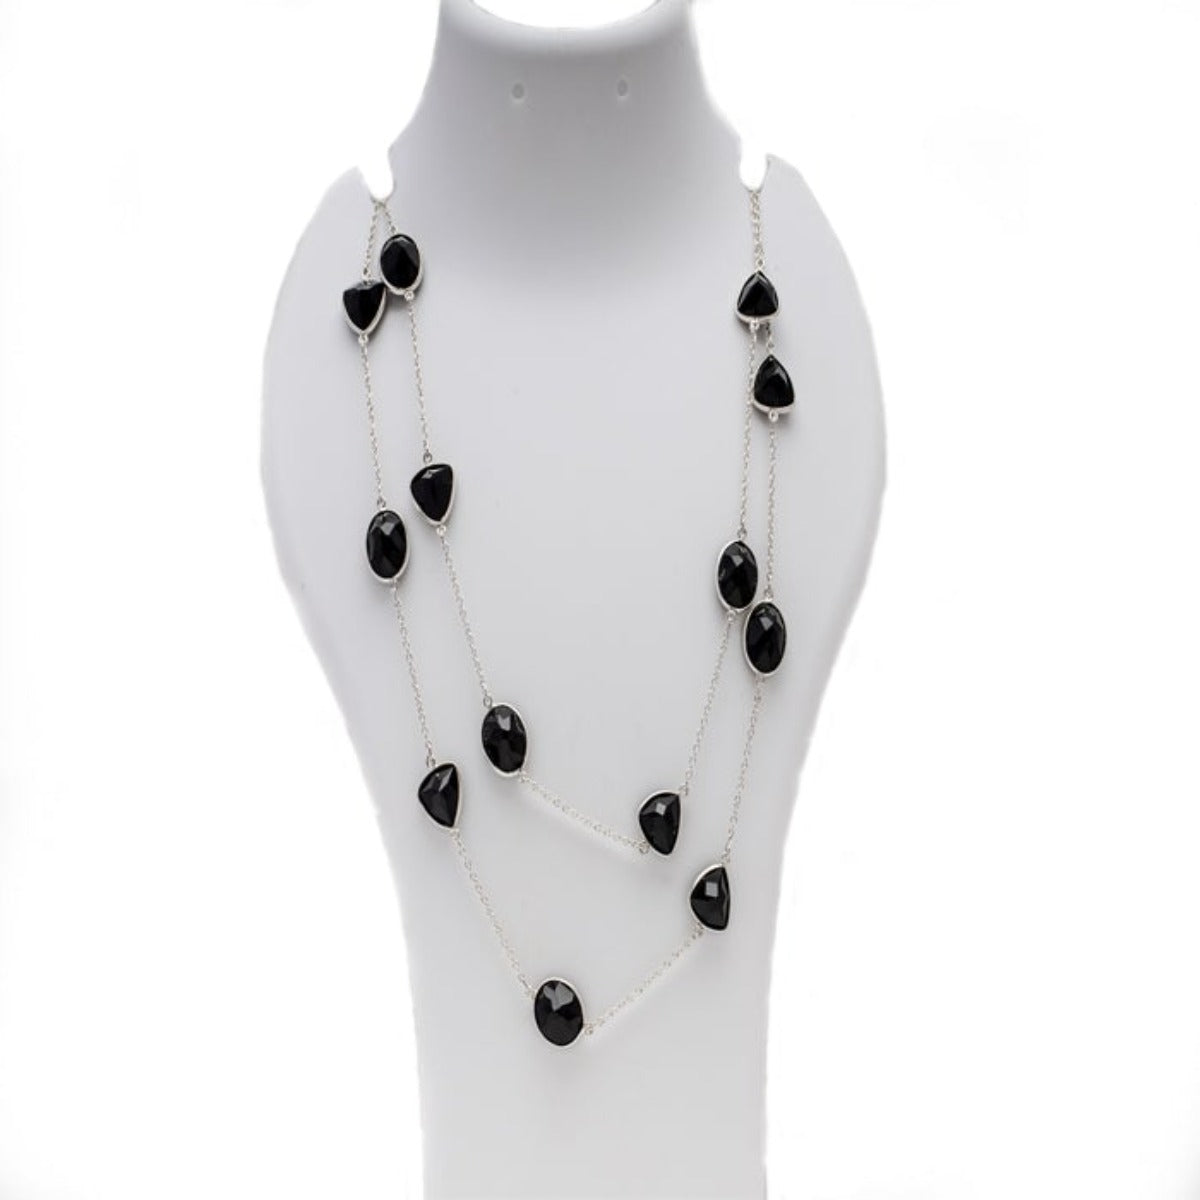 Blisse Allure 925 Sterling Black Onyx Semi Precious Stone Necklace